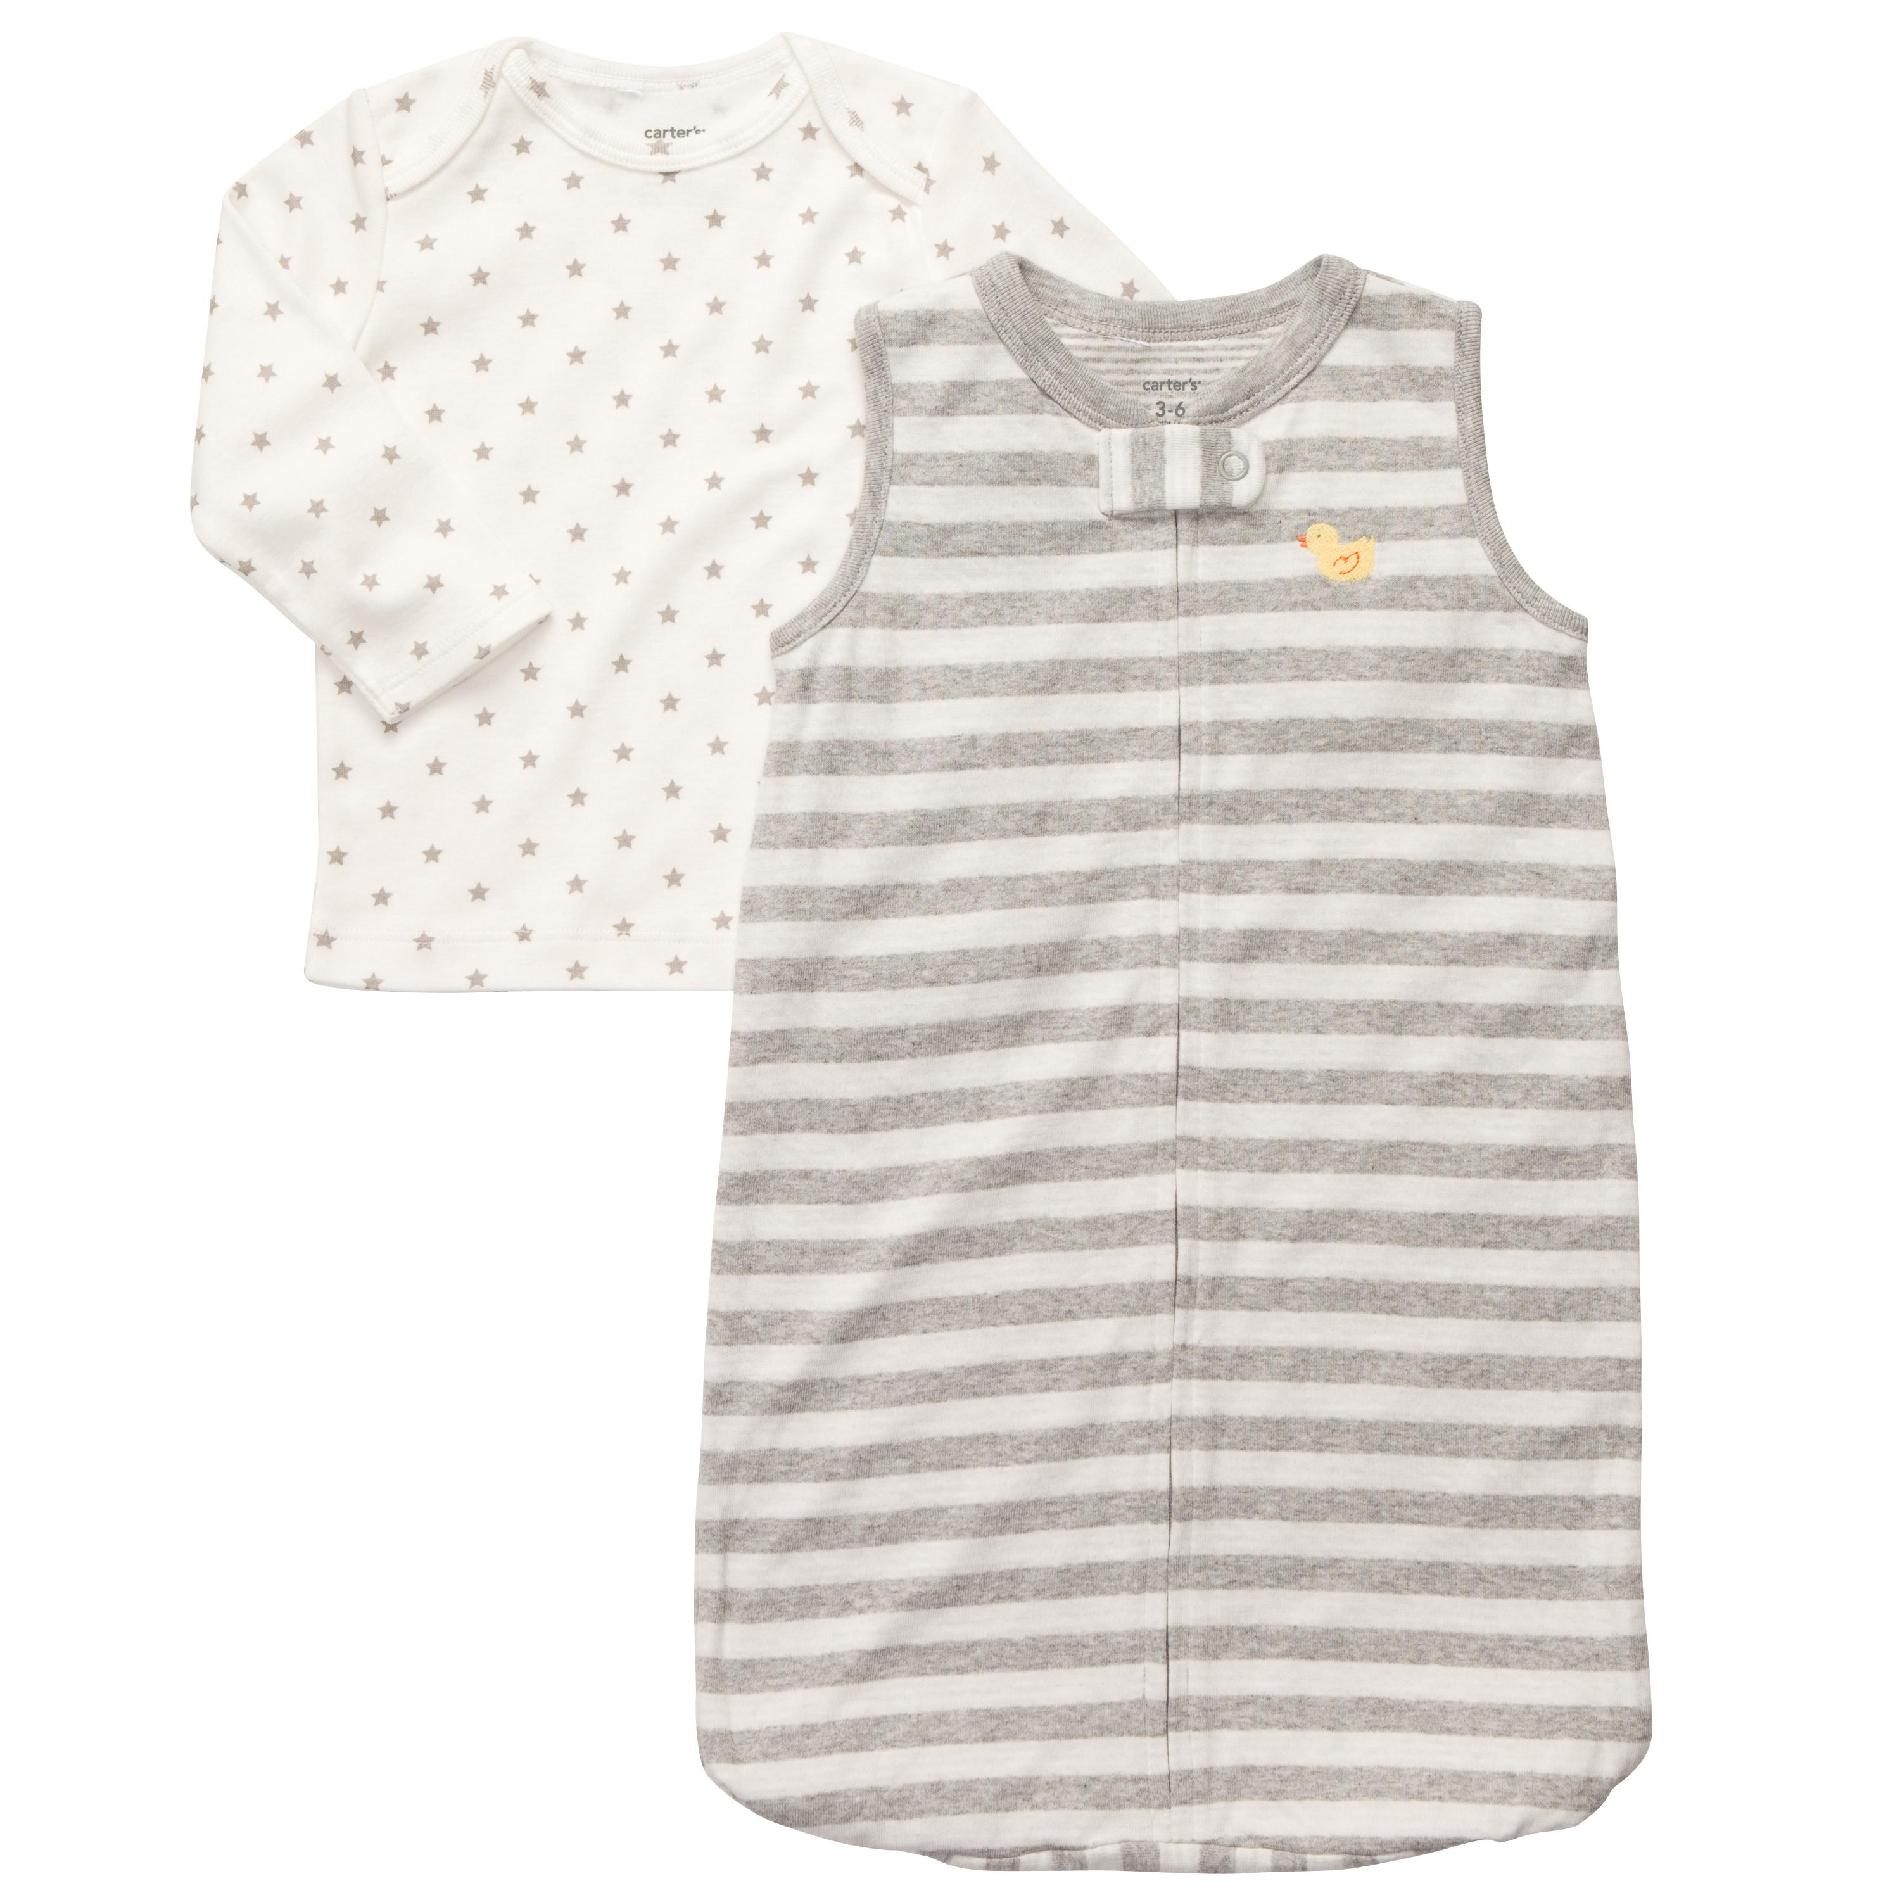 Carter's Newborn Shirt & Sleeper Sack - Duck